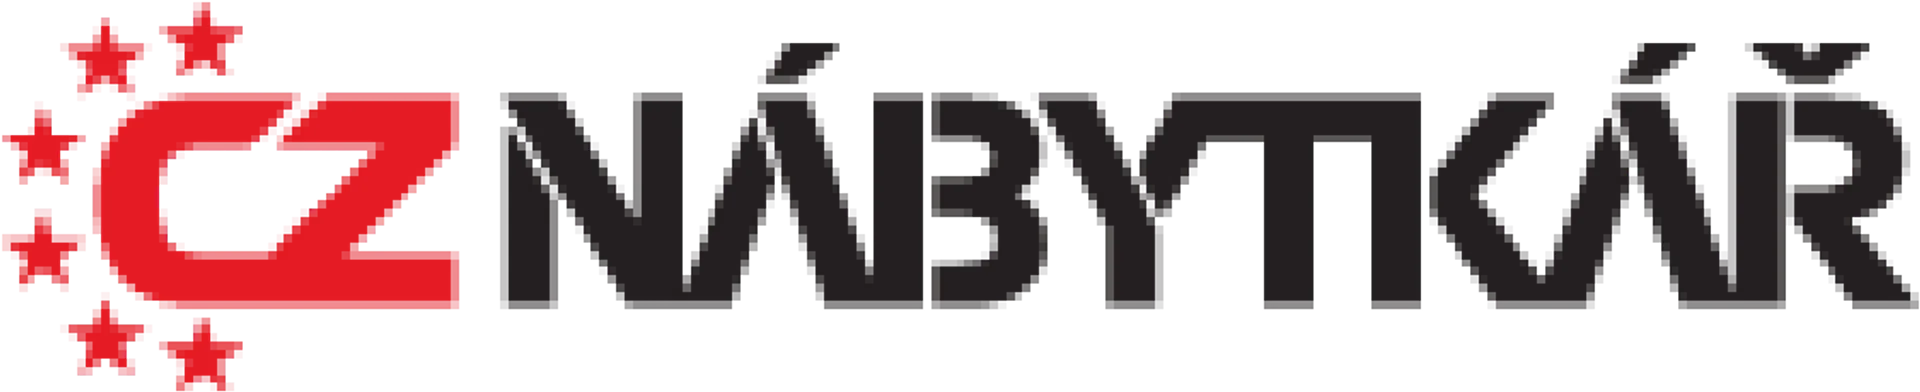 CZ NÁBYTKÁŘ logo